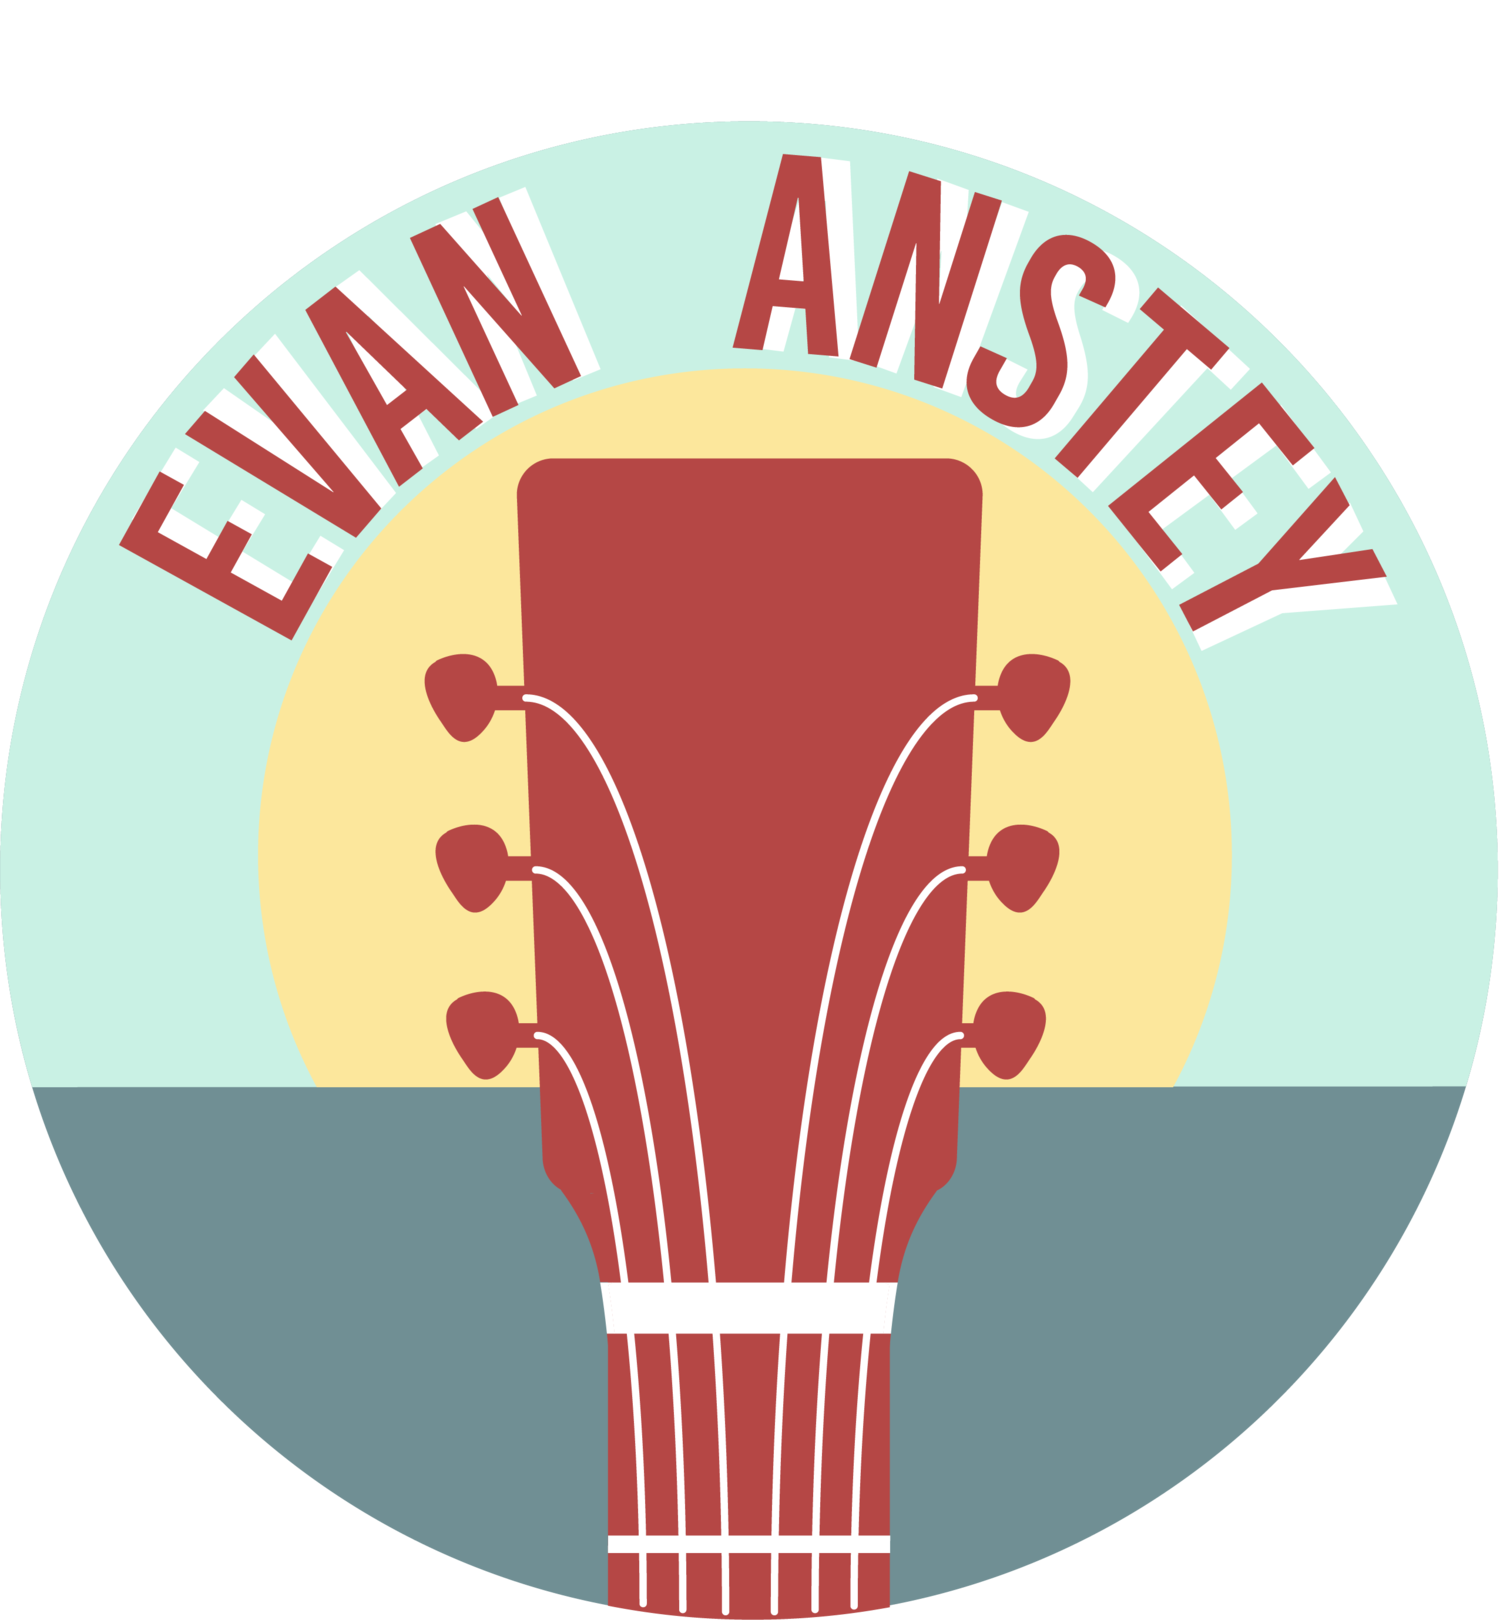 Evan Anstey